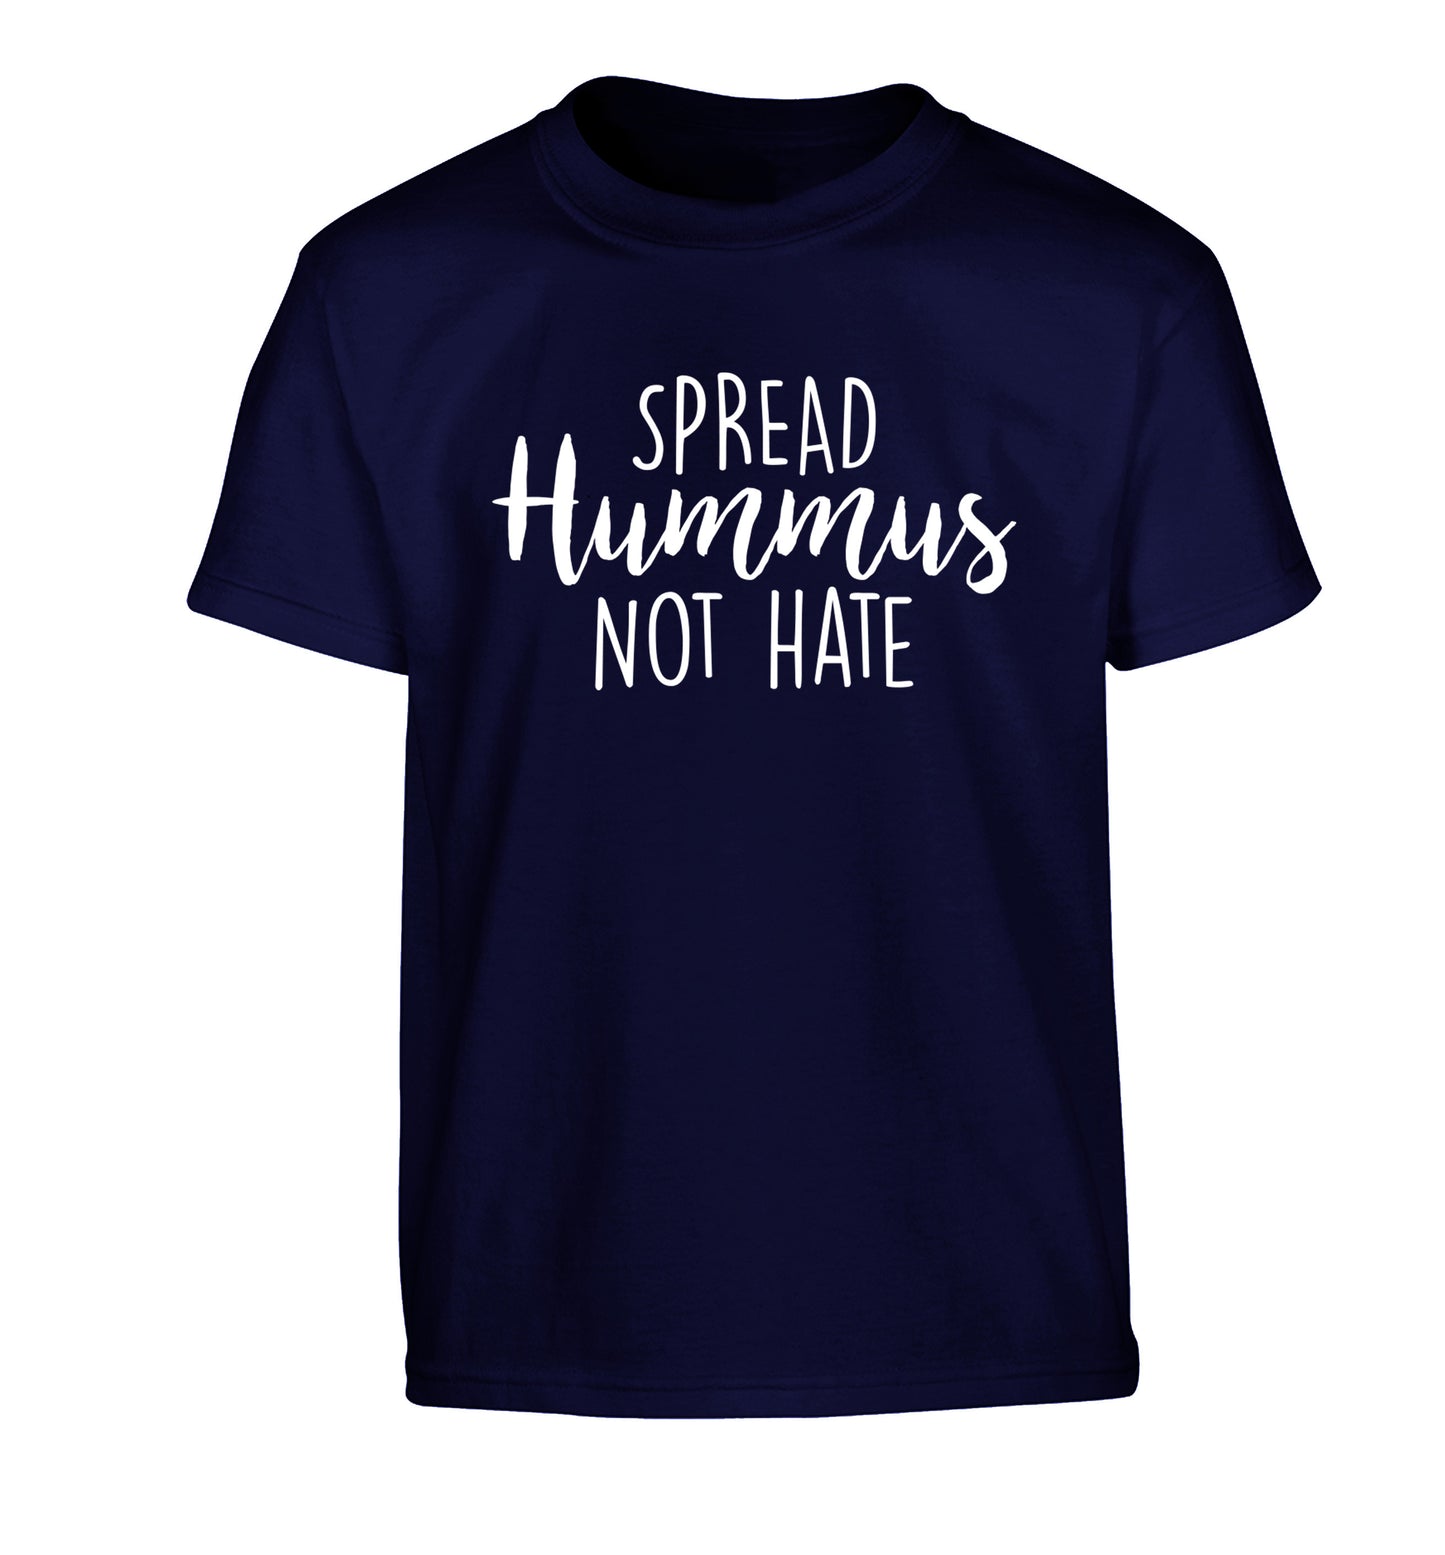 Spread hummus not hate script text Children's navy Tshirt 12-14 Years